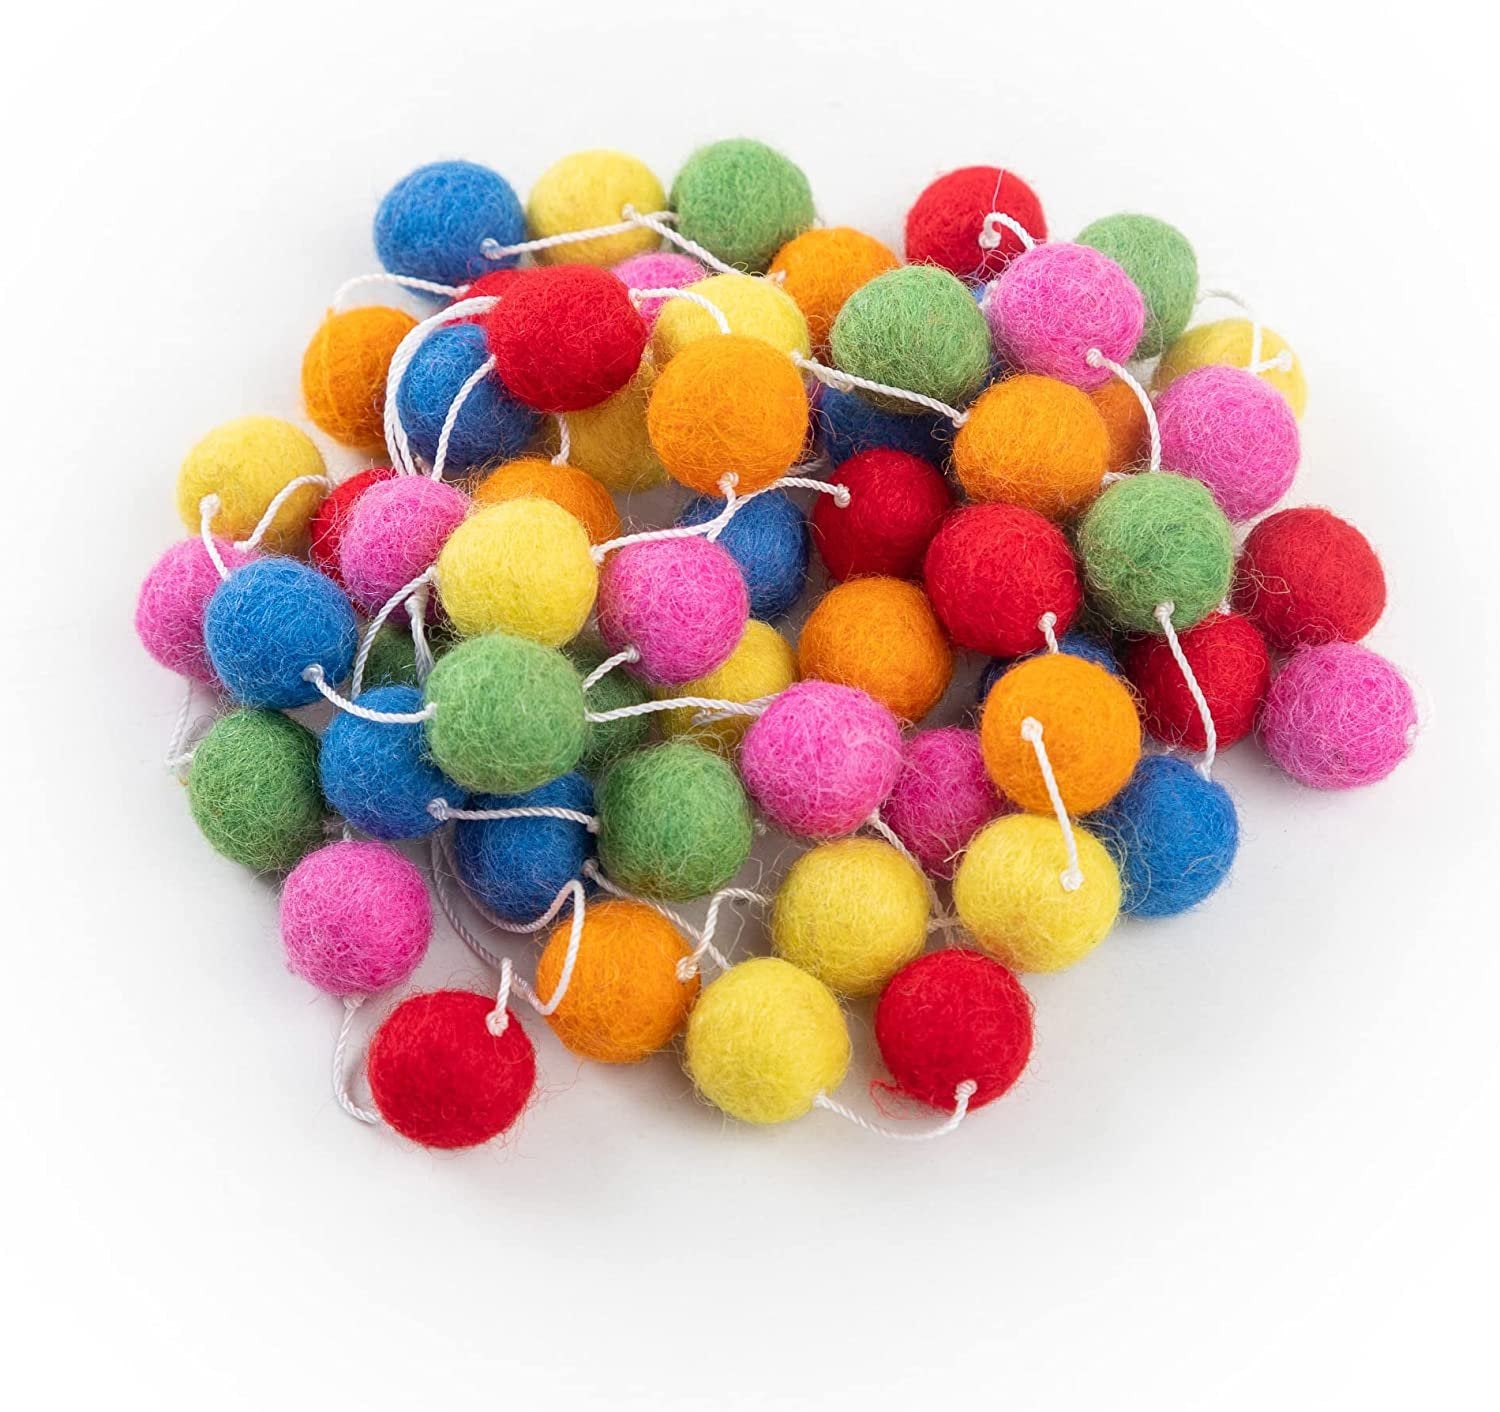 A playful garland strung with large, fluffy felt balls.